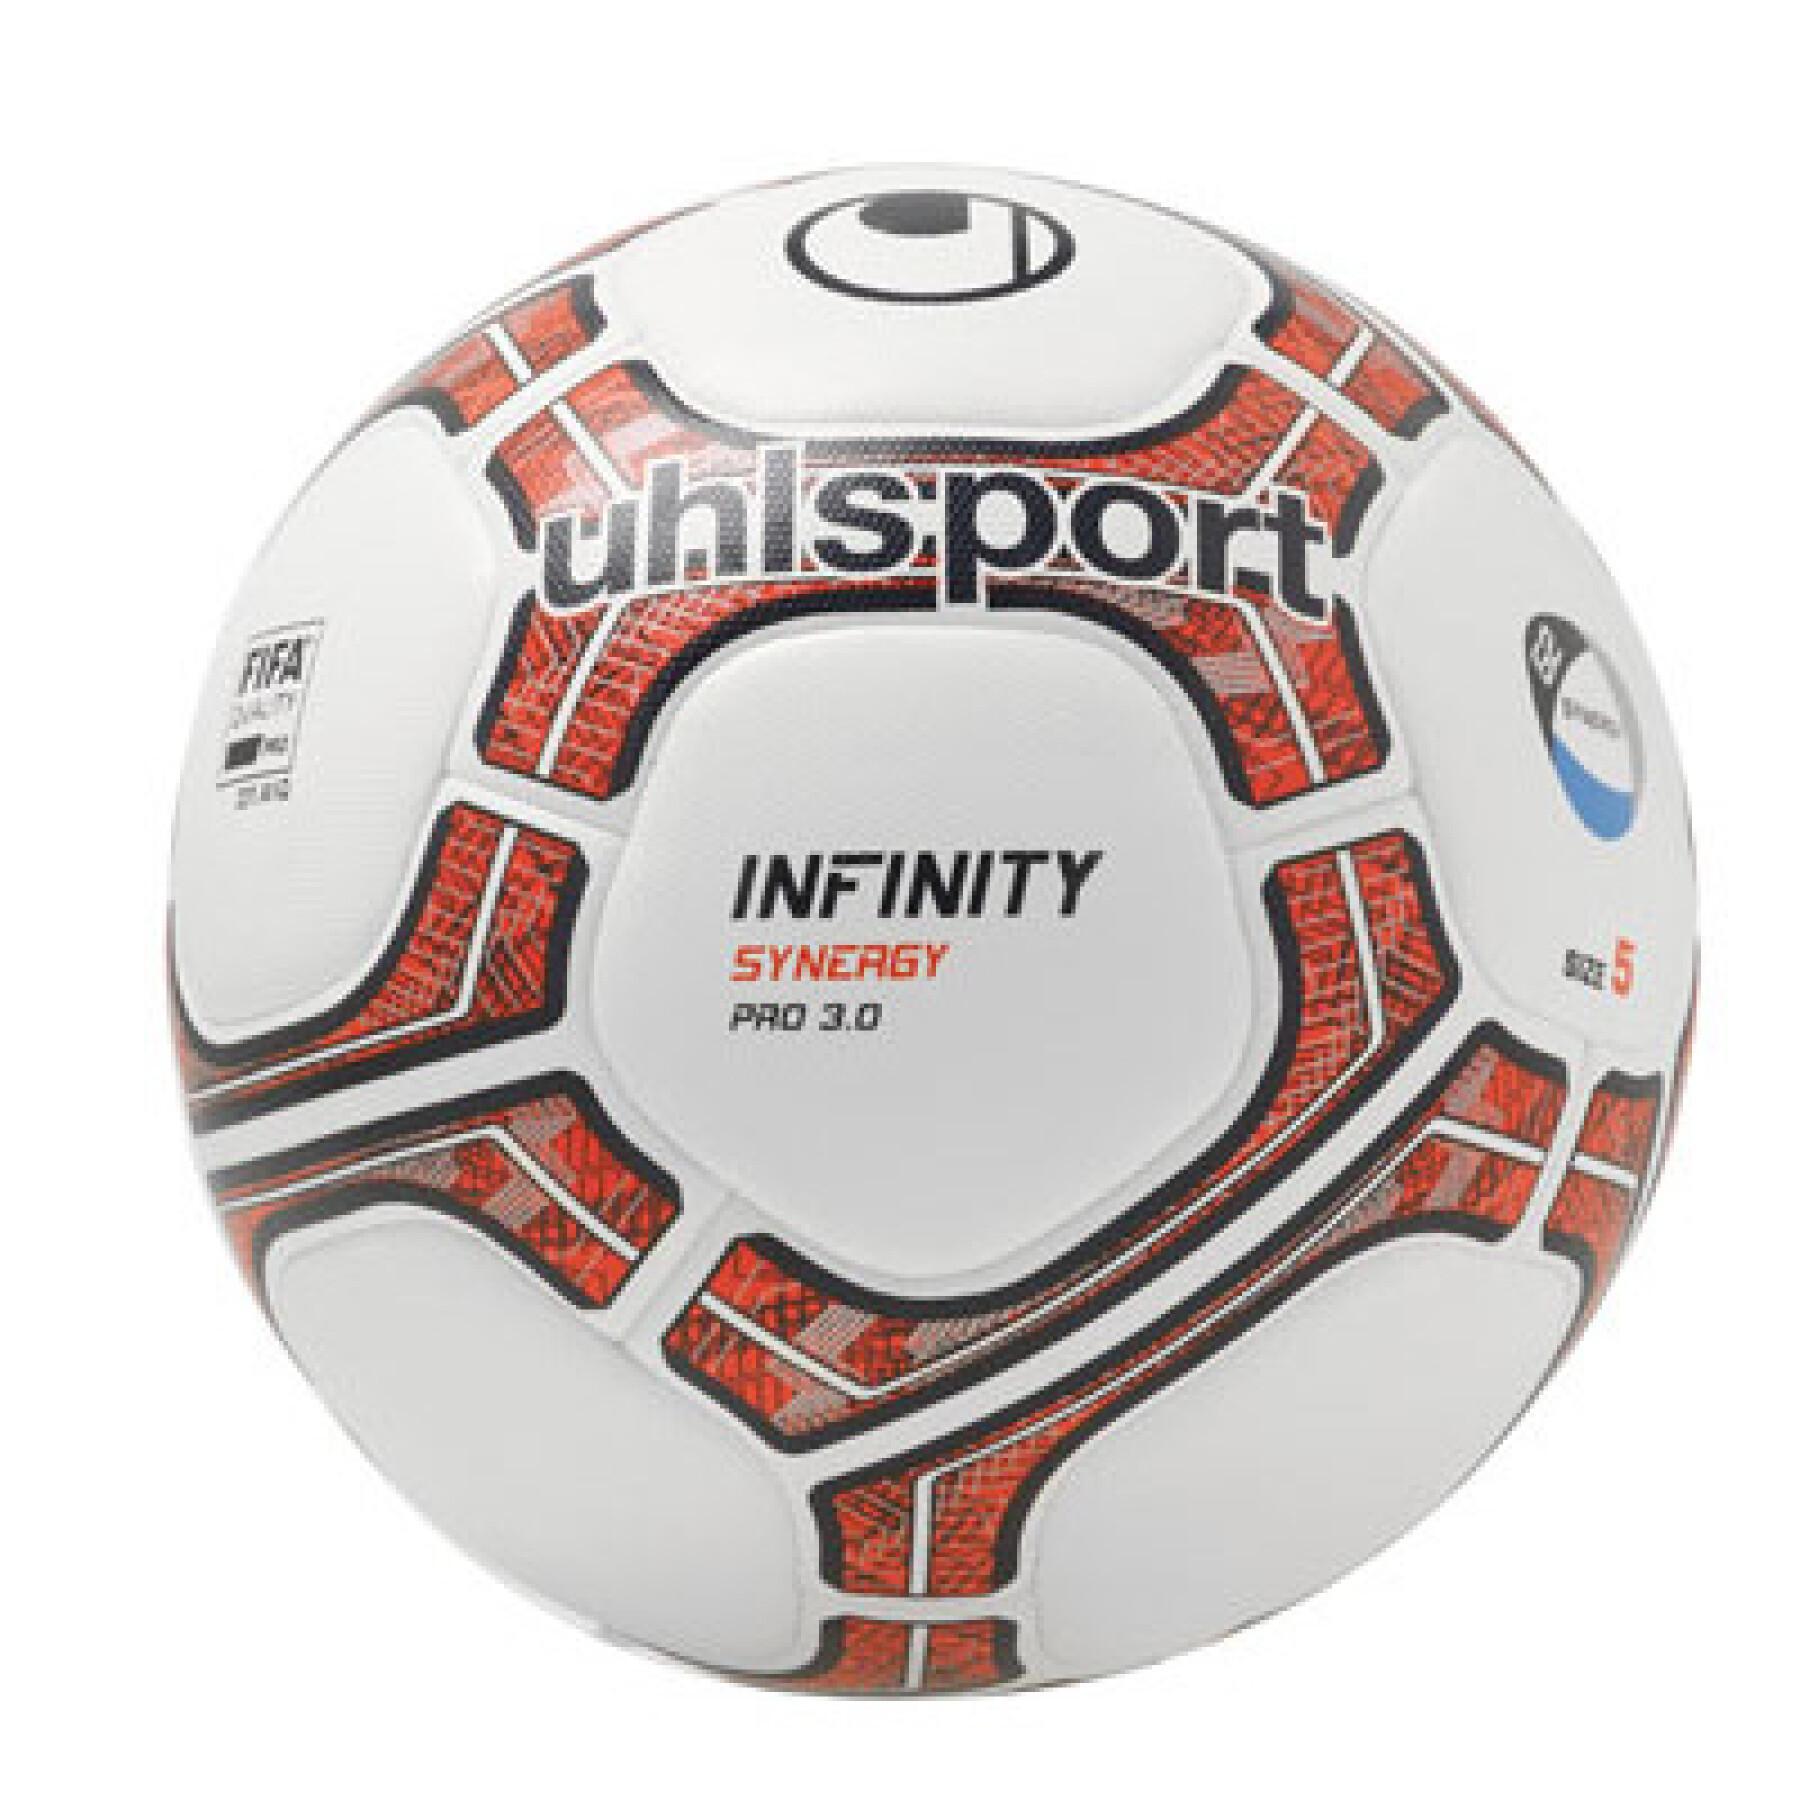 Balon Uhlsport Infinity Synergy G2 Pro 3.0